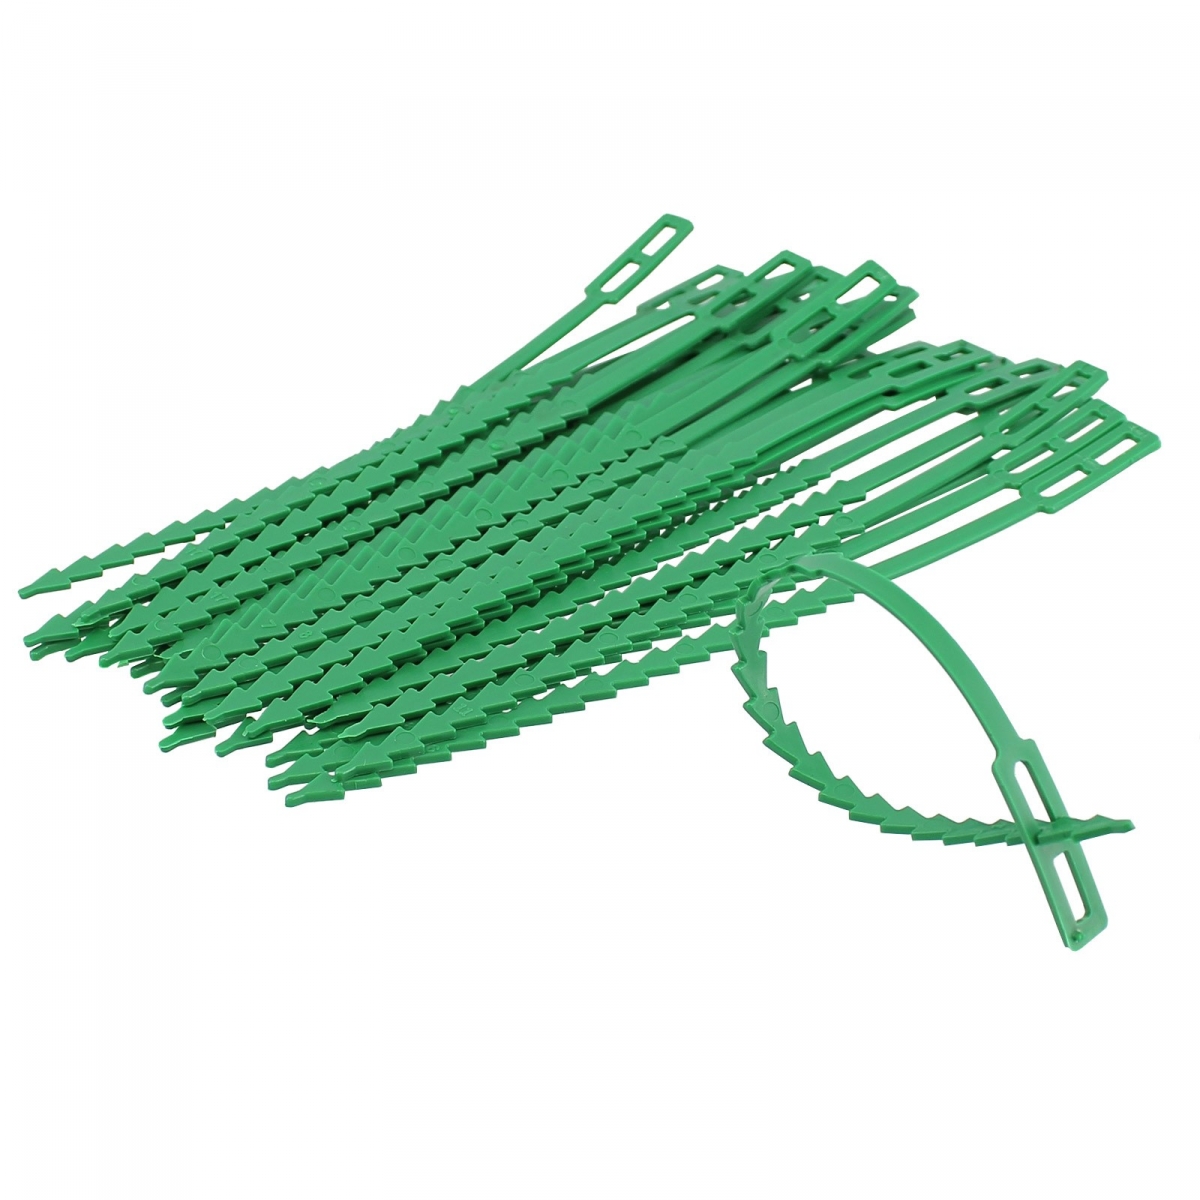 COM-FOUR® 200x Liant végétal en plastique vert - stabiliser les plantes -  pinces à plantes - attache tuteur plante (14 cm)